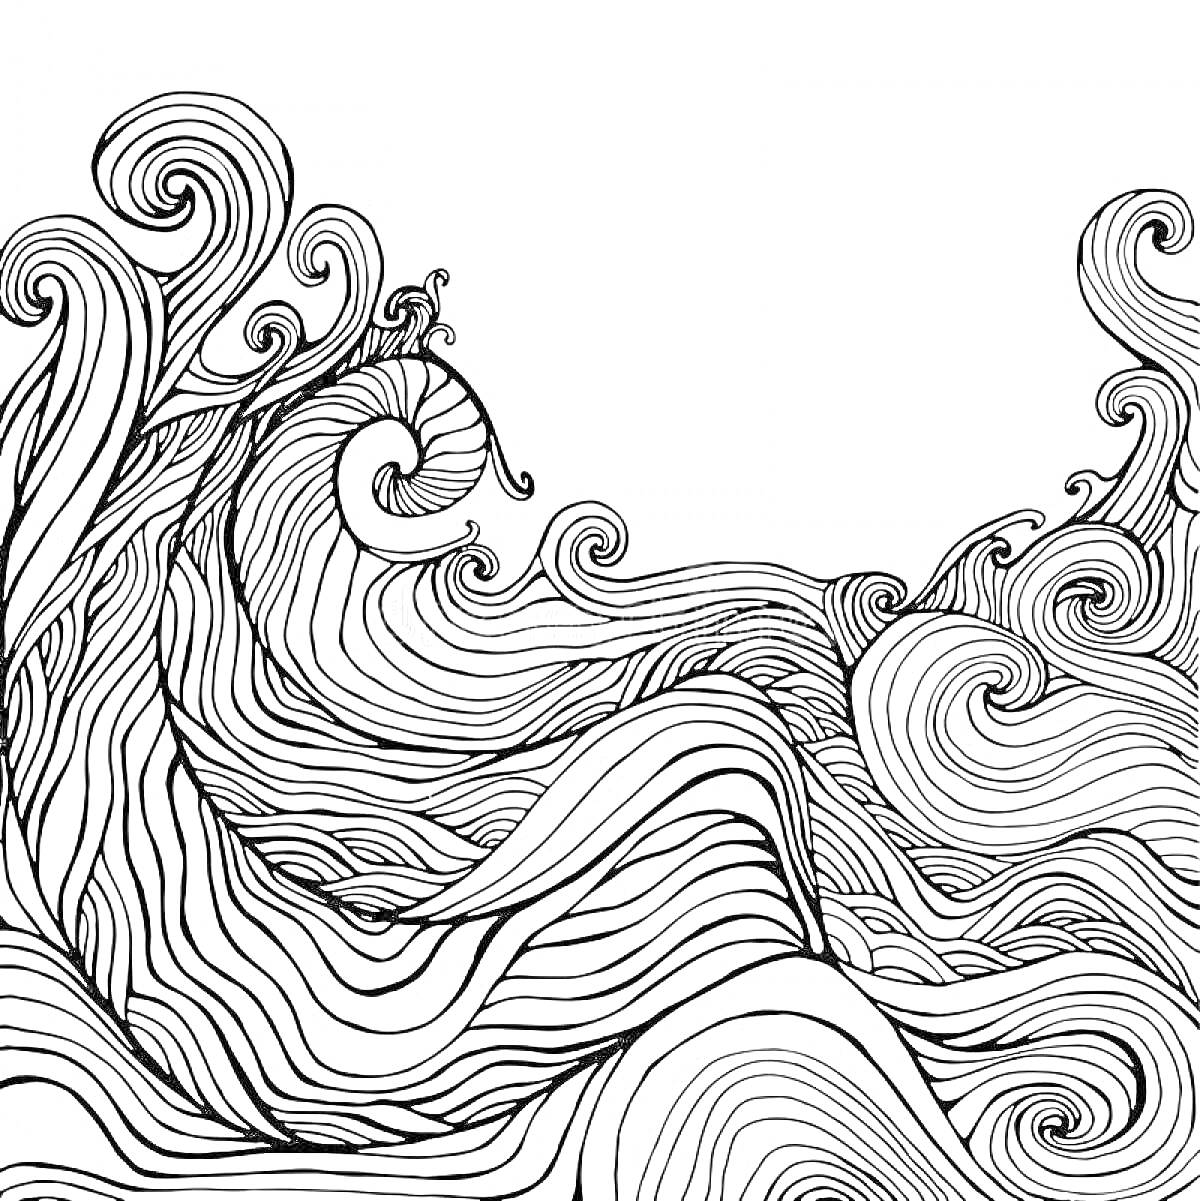 Волна с абстрактными волнообразными узорами